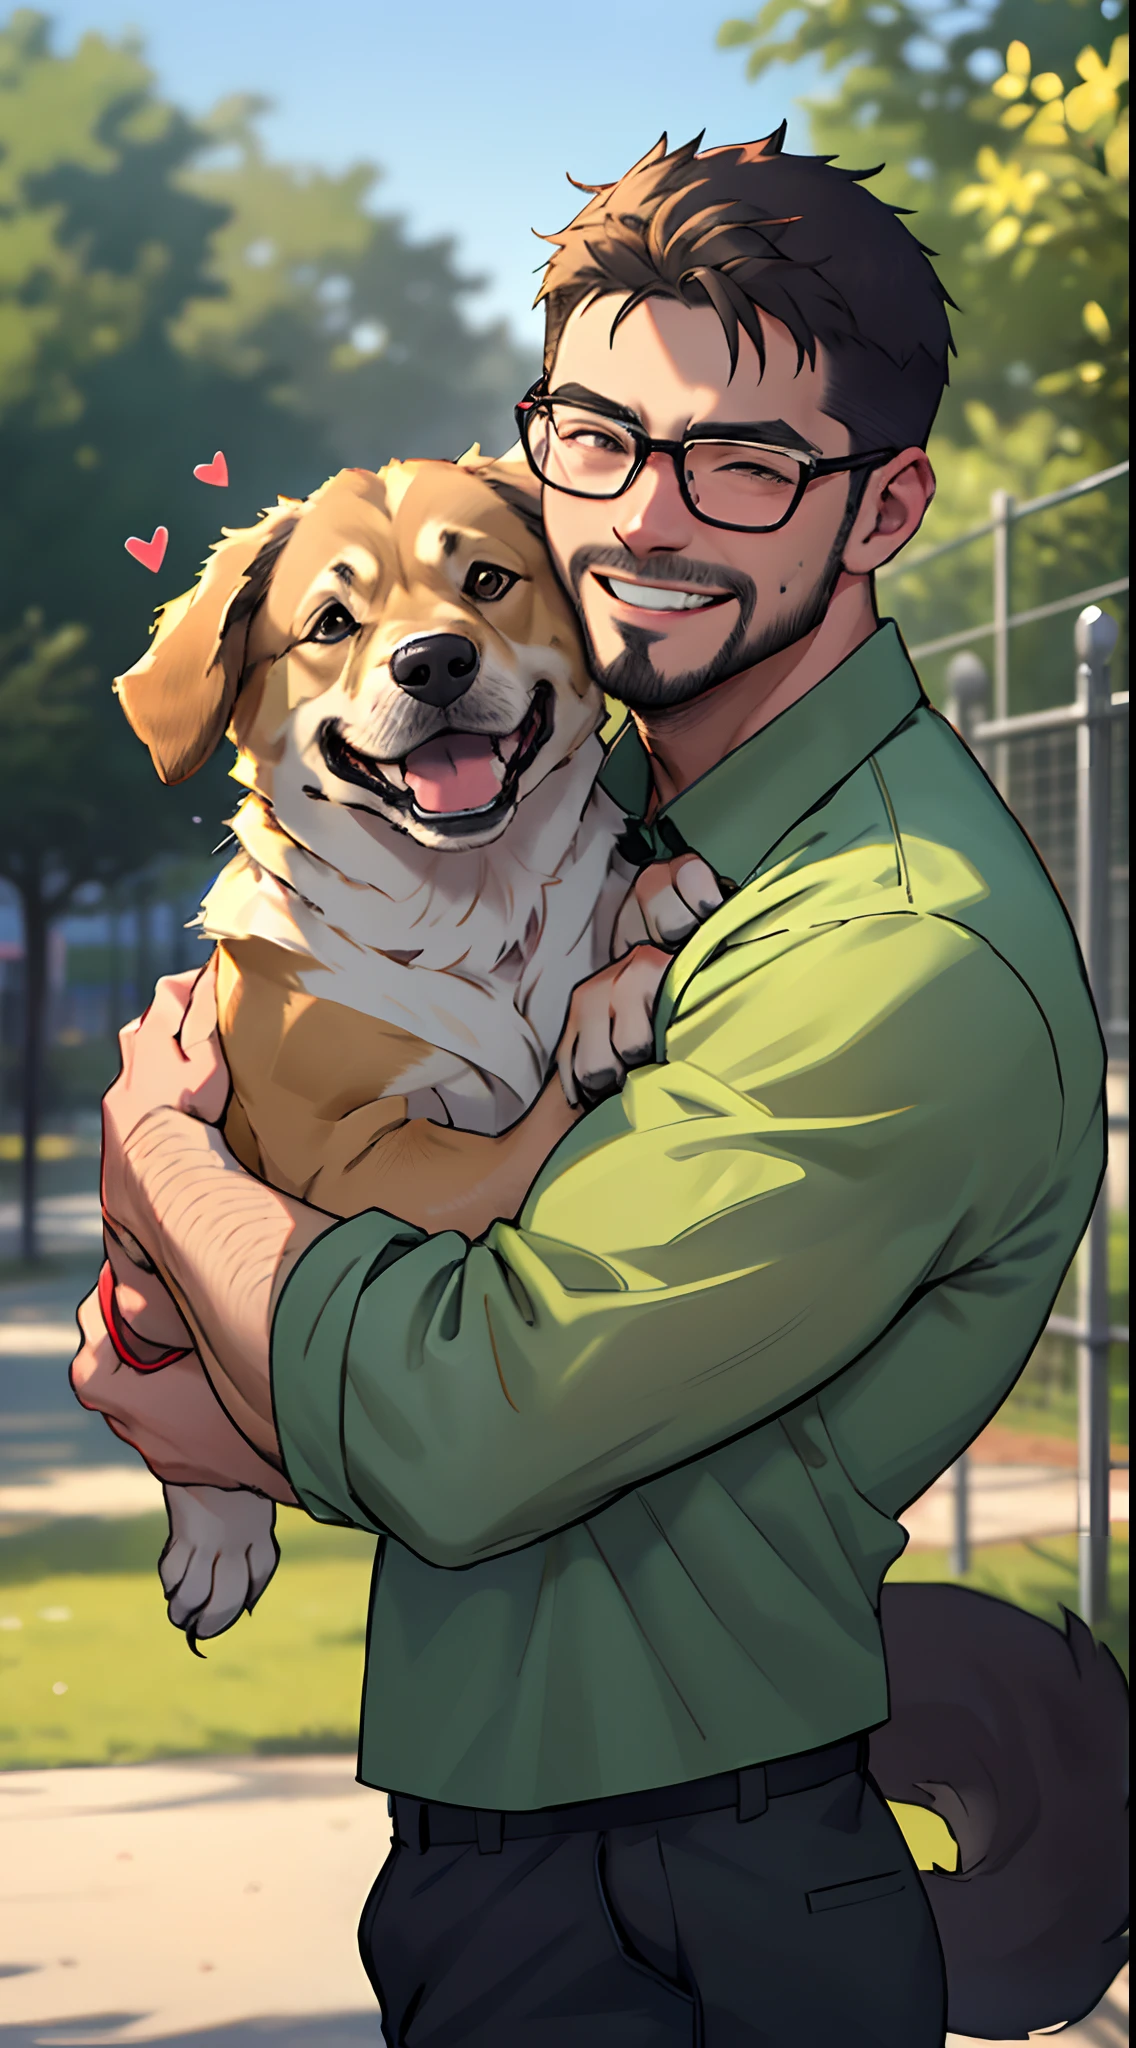 ein Mann mit Bart und einem Deutschen Schäferhund, der Mann mit der Brille, grünes Shirt, in einem Hundepark, der Mann trägt und umarmt den Hund, Der hohe Brunnen detailliert, Gesichtsfokus, glückliches Lächeln, glücklicher Hund, herzerwärmend, von der Seite gesehen